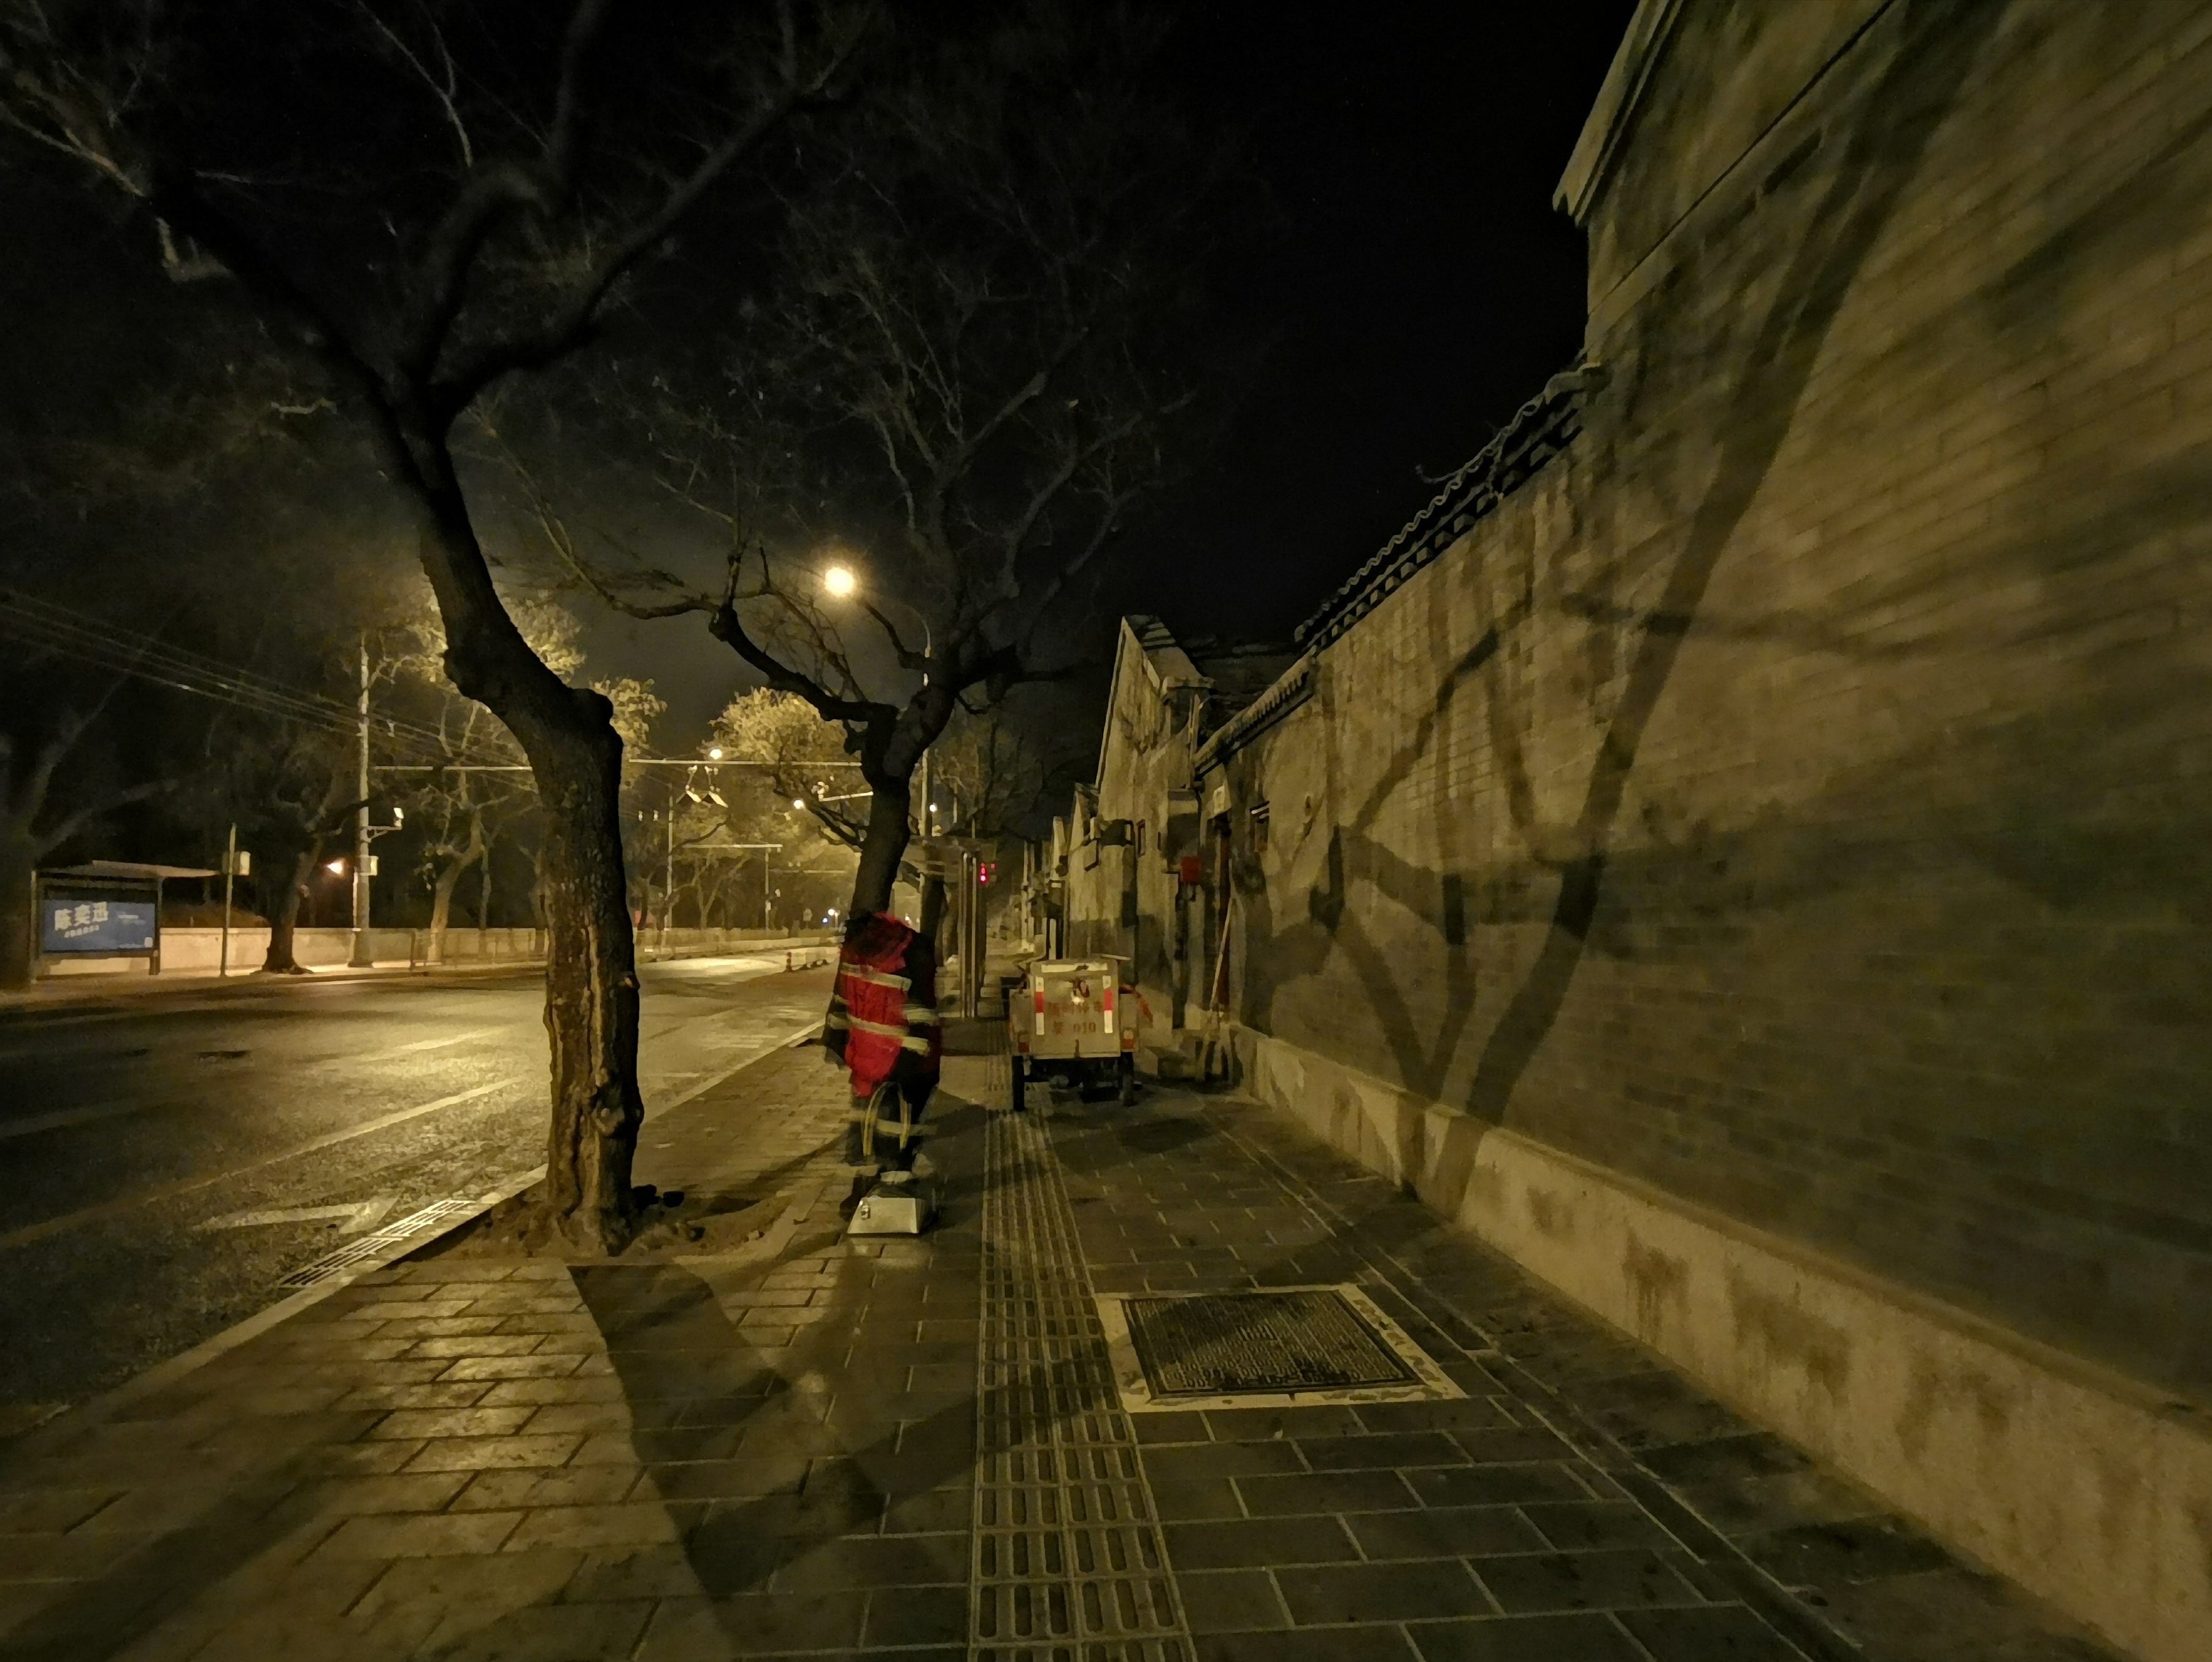 凌晨六点的北京:整条街安静又神秘,他们忙碌的身影真的很迷人